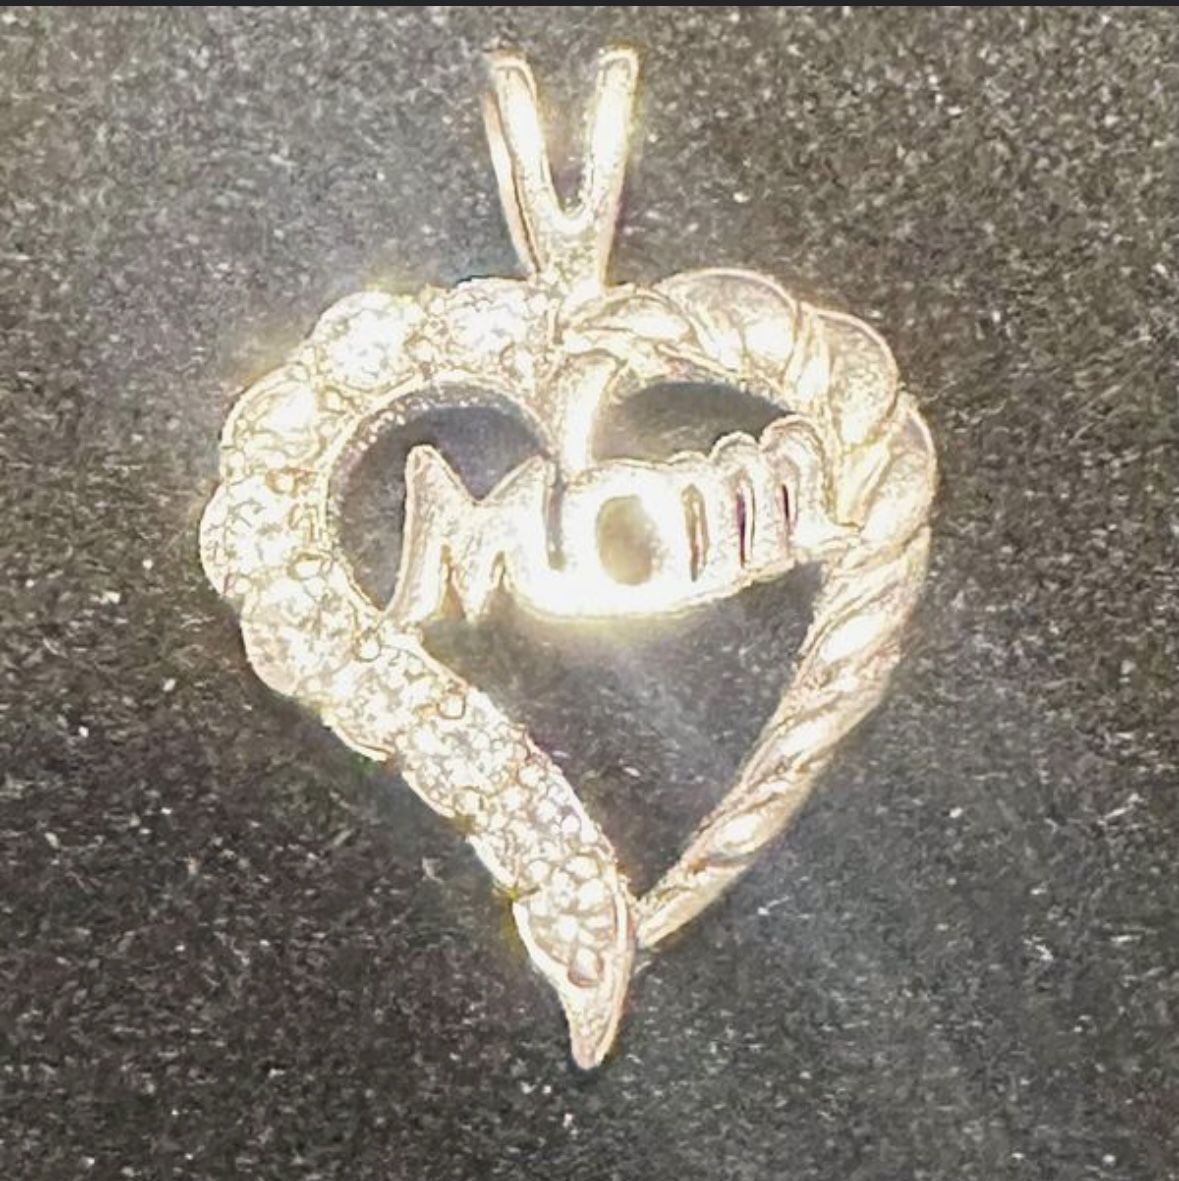 Mom Silver Pendant